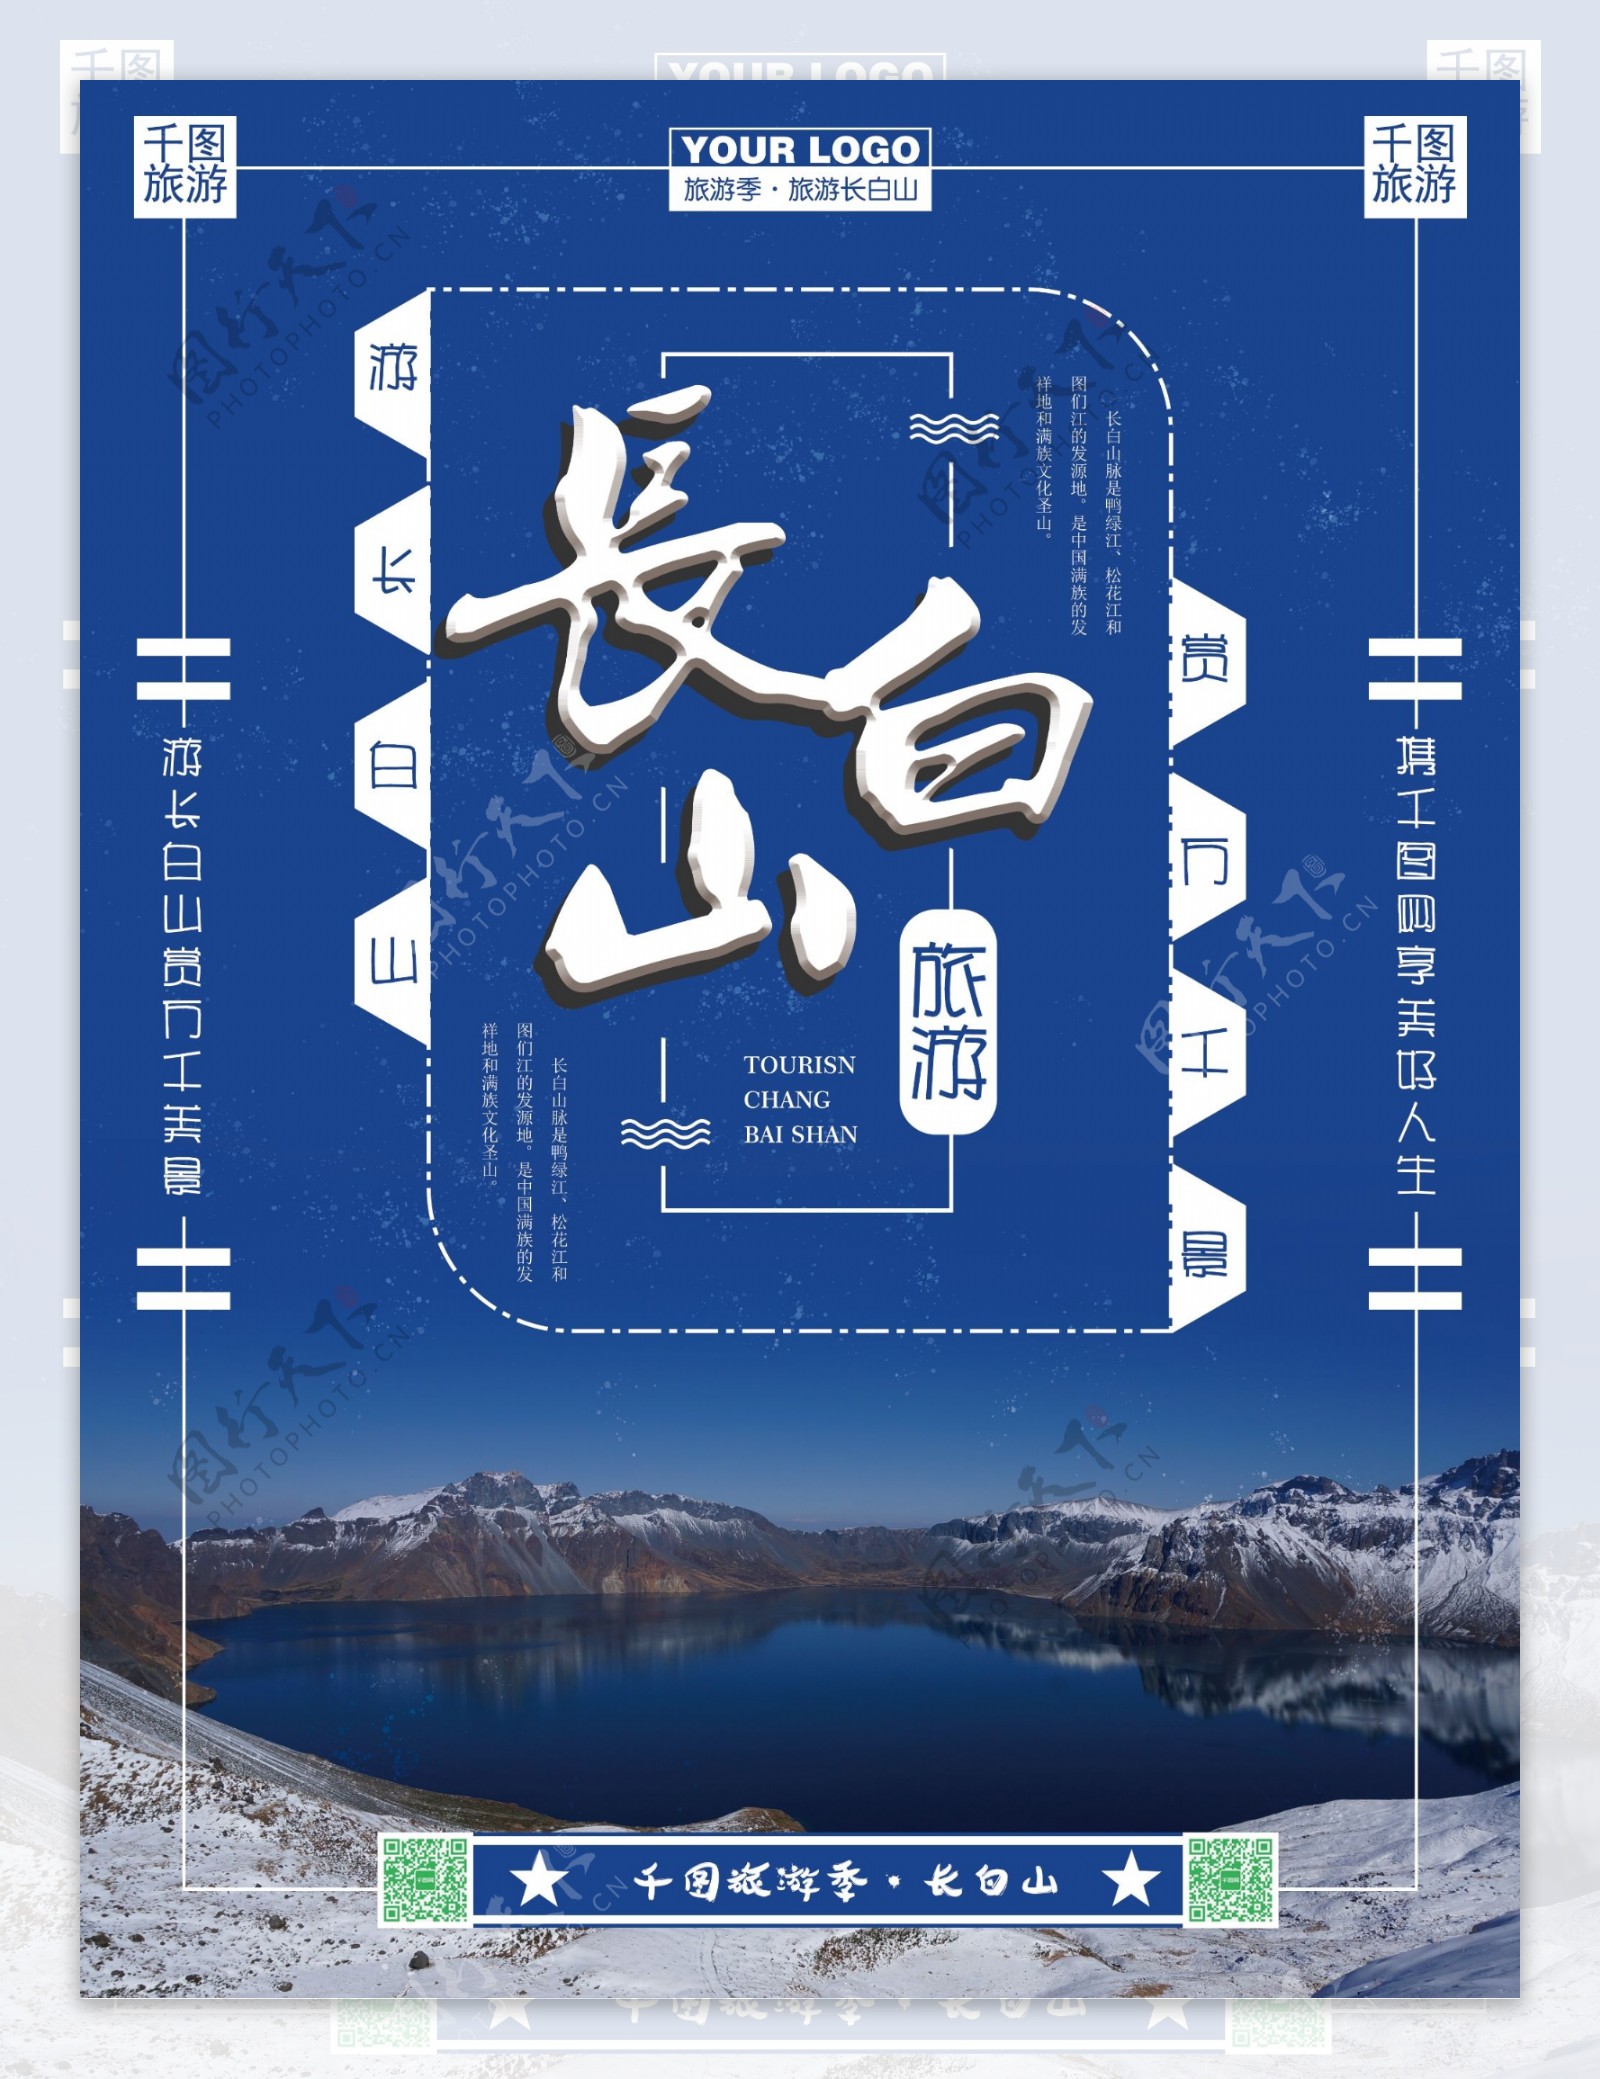 蓝色背景冬季长白山旅游海报设计